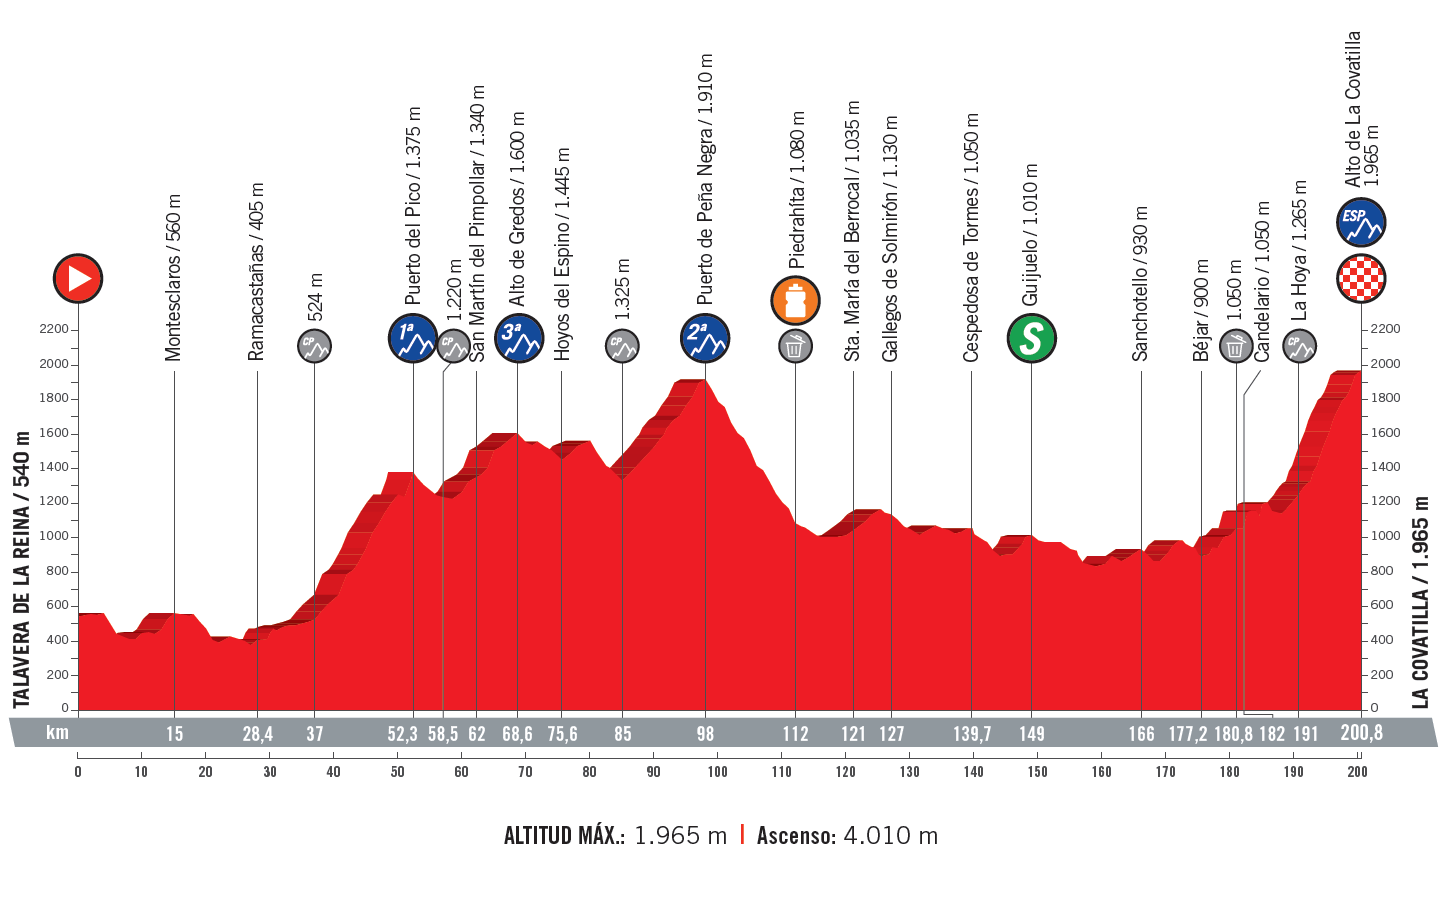 profil 9. etapu Vuelta a Espana 2018